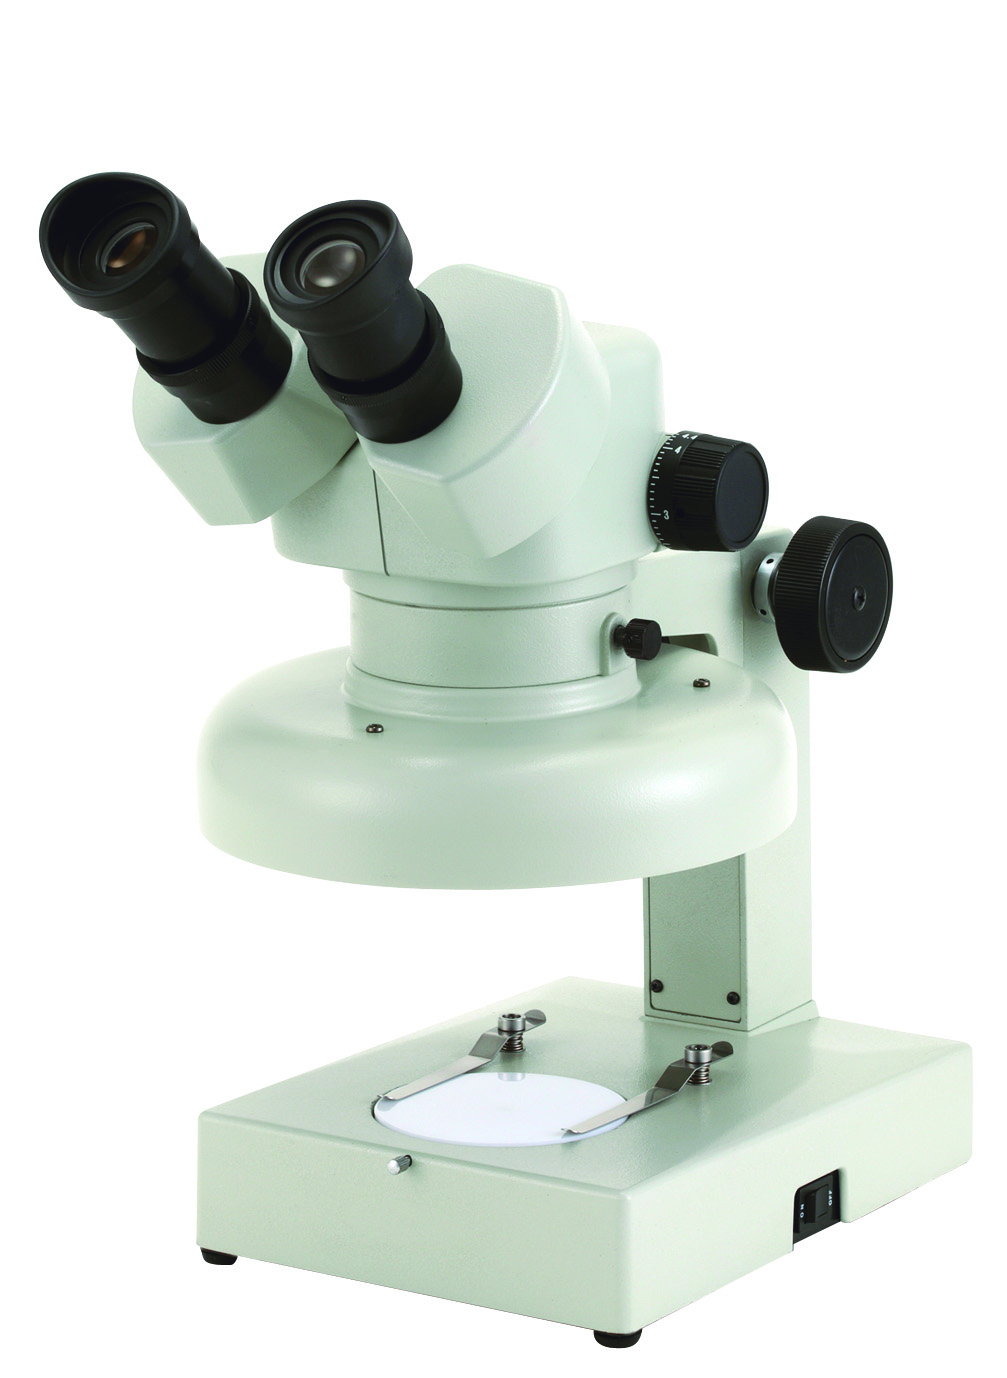 カートン光学 ズームシステム実体顕微鏡<三眼式> 落射/透過白色LED調光照明付